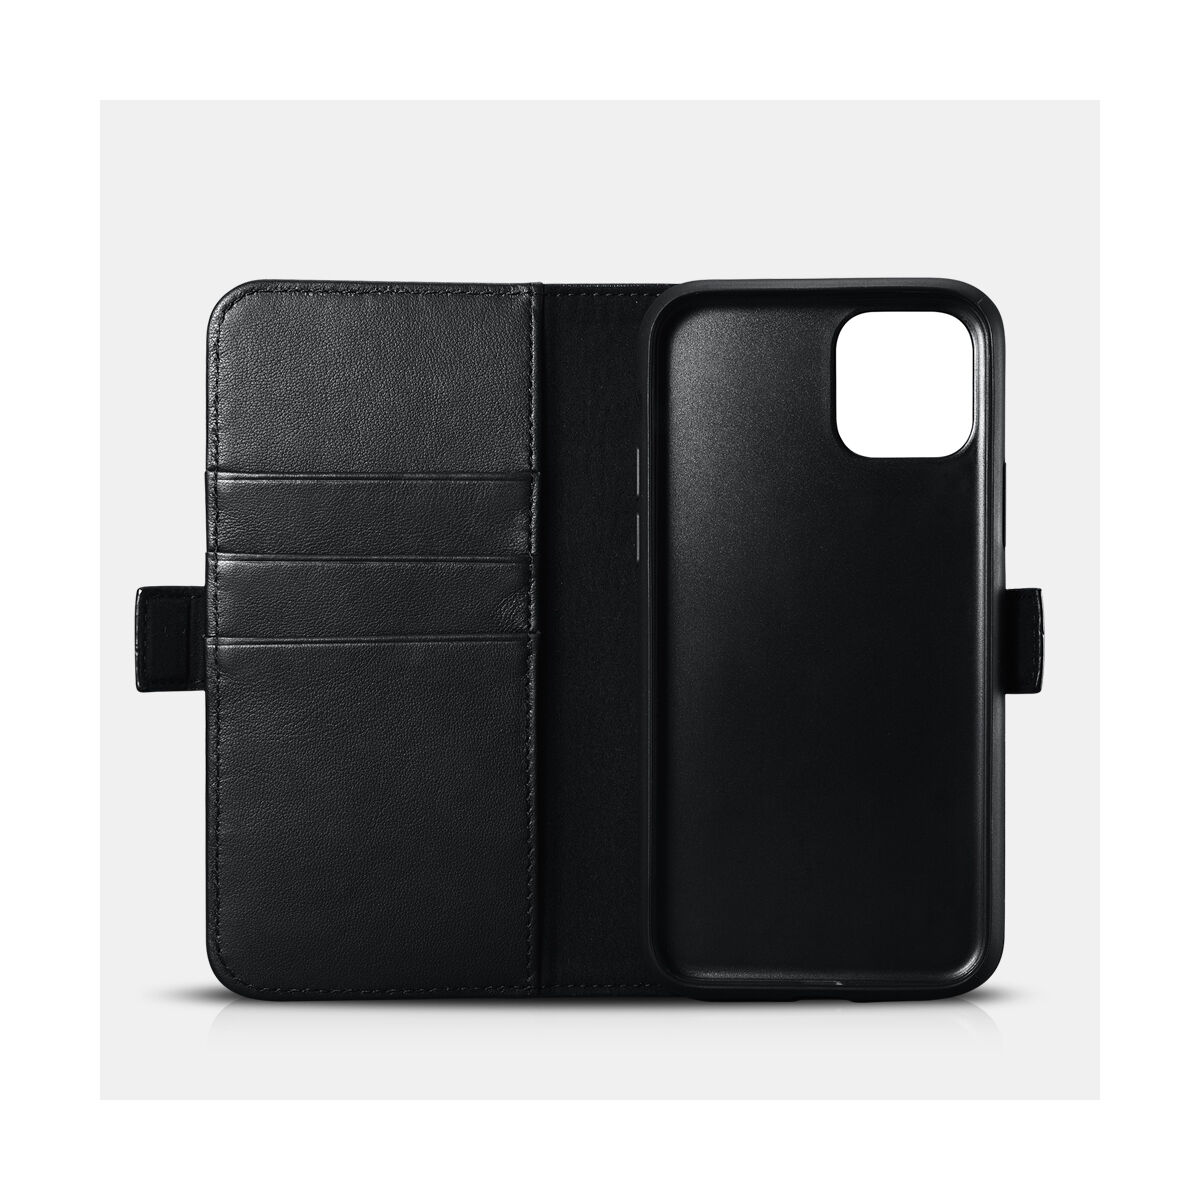 iCarer iPhone 11 Pro Max tok, Nappa Bőr Levehető 2-in-1 pénztárcatok, levehető kártyatartóval, fekete